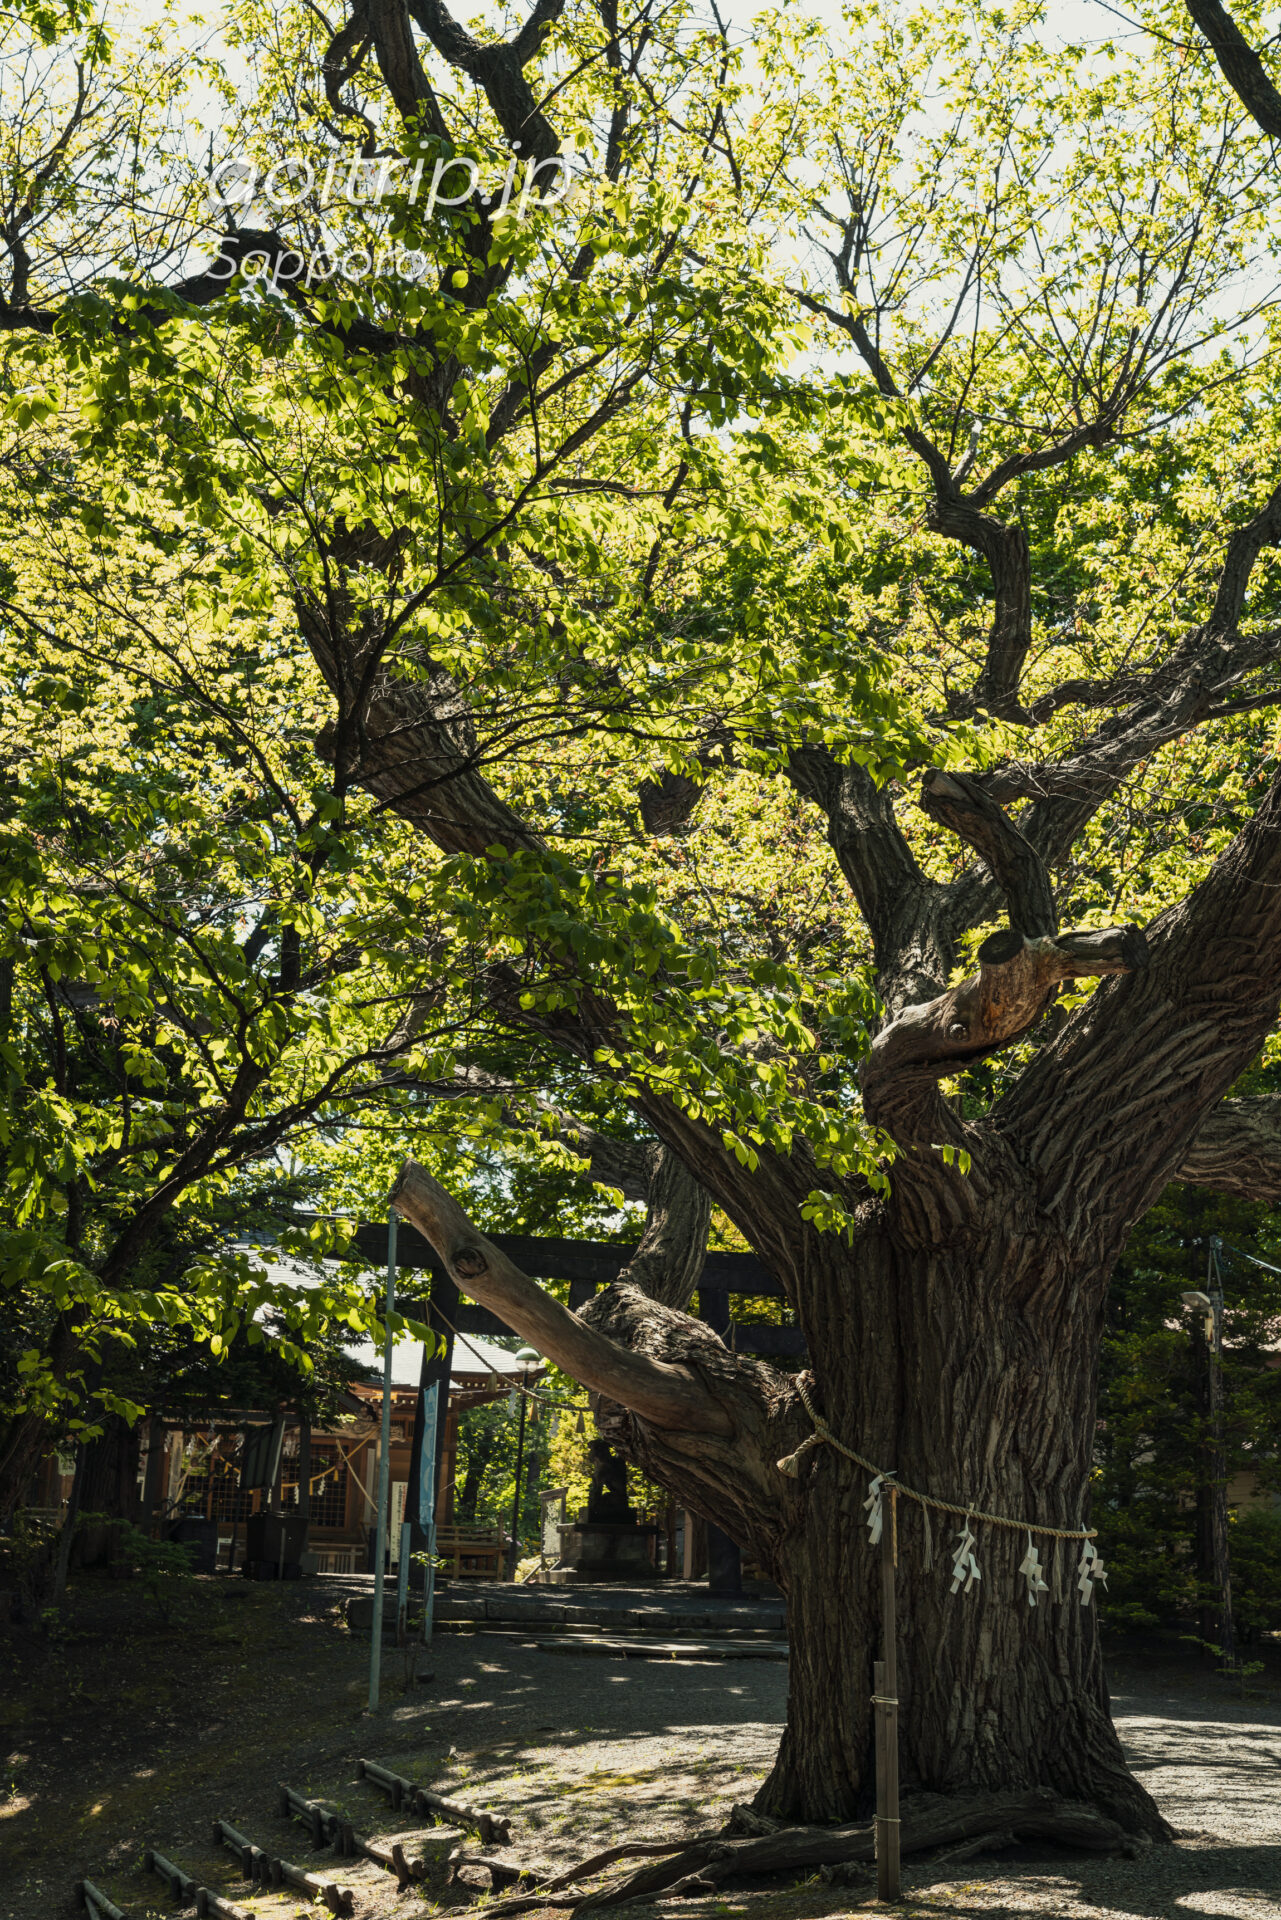 札幌の天神山緑地 相馬神社の御神木 樹齢300年以上のシバクリ